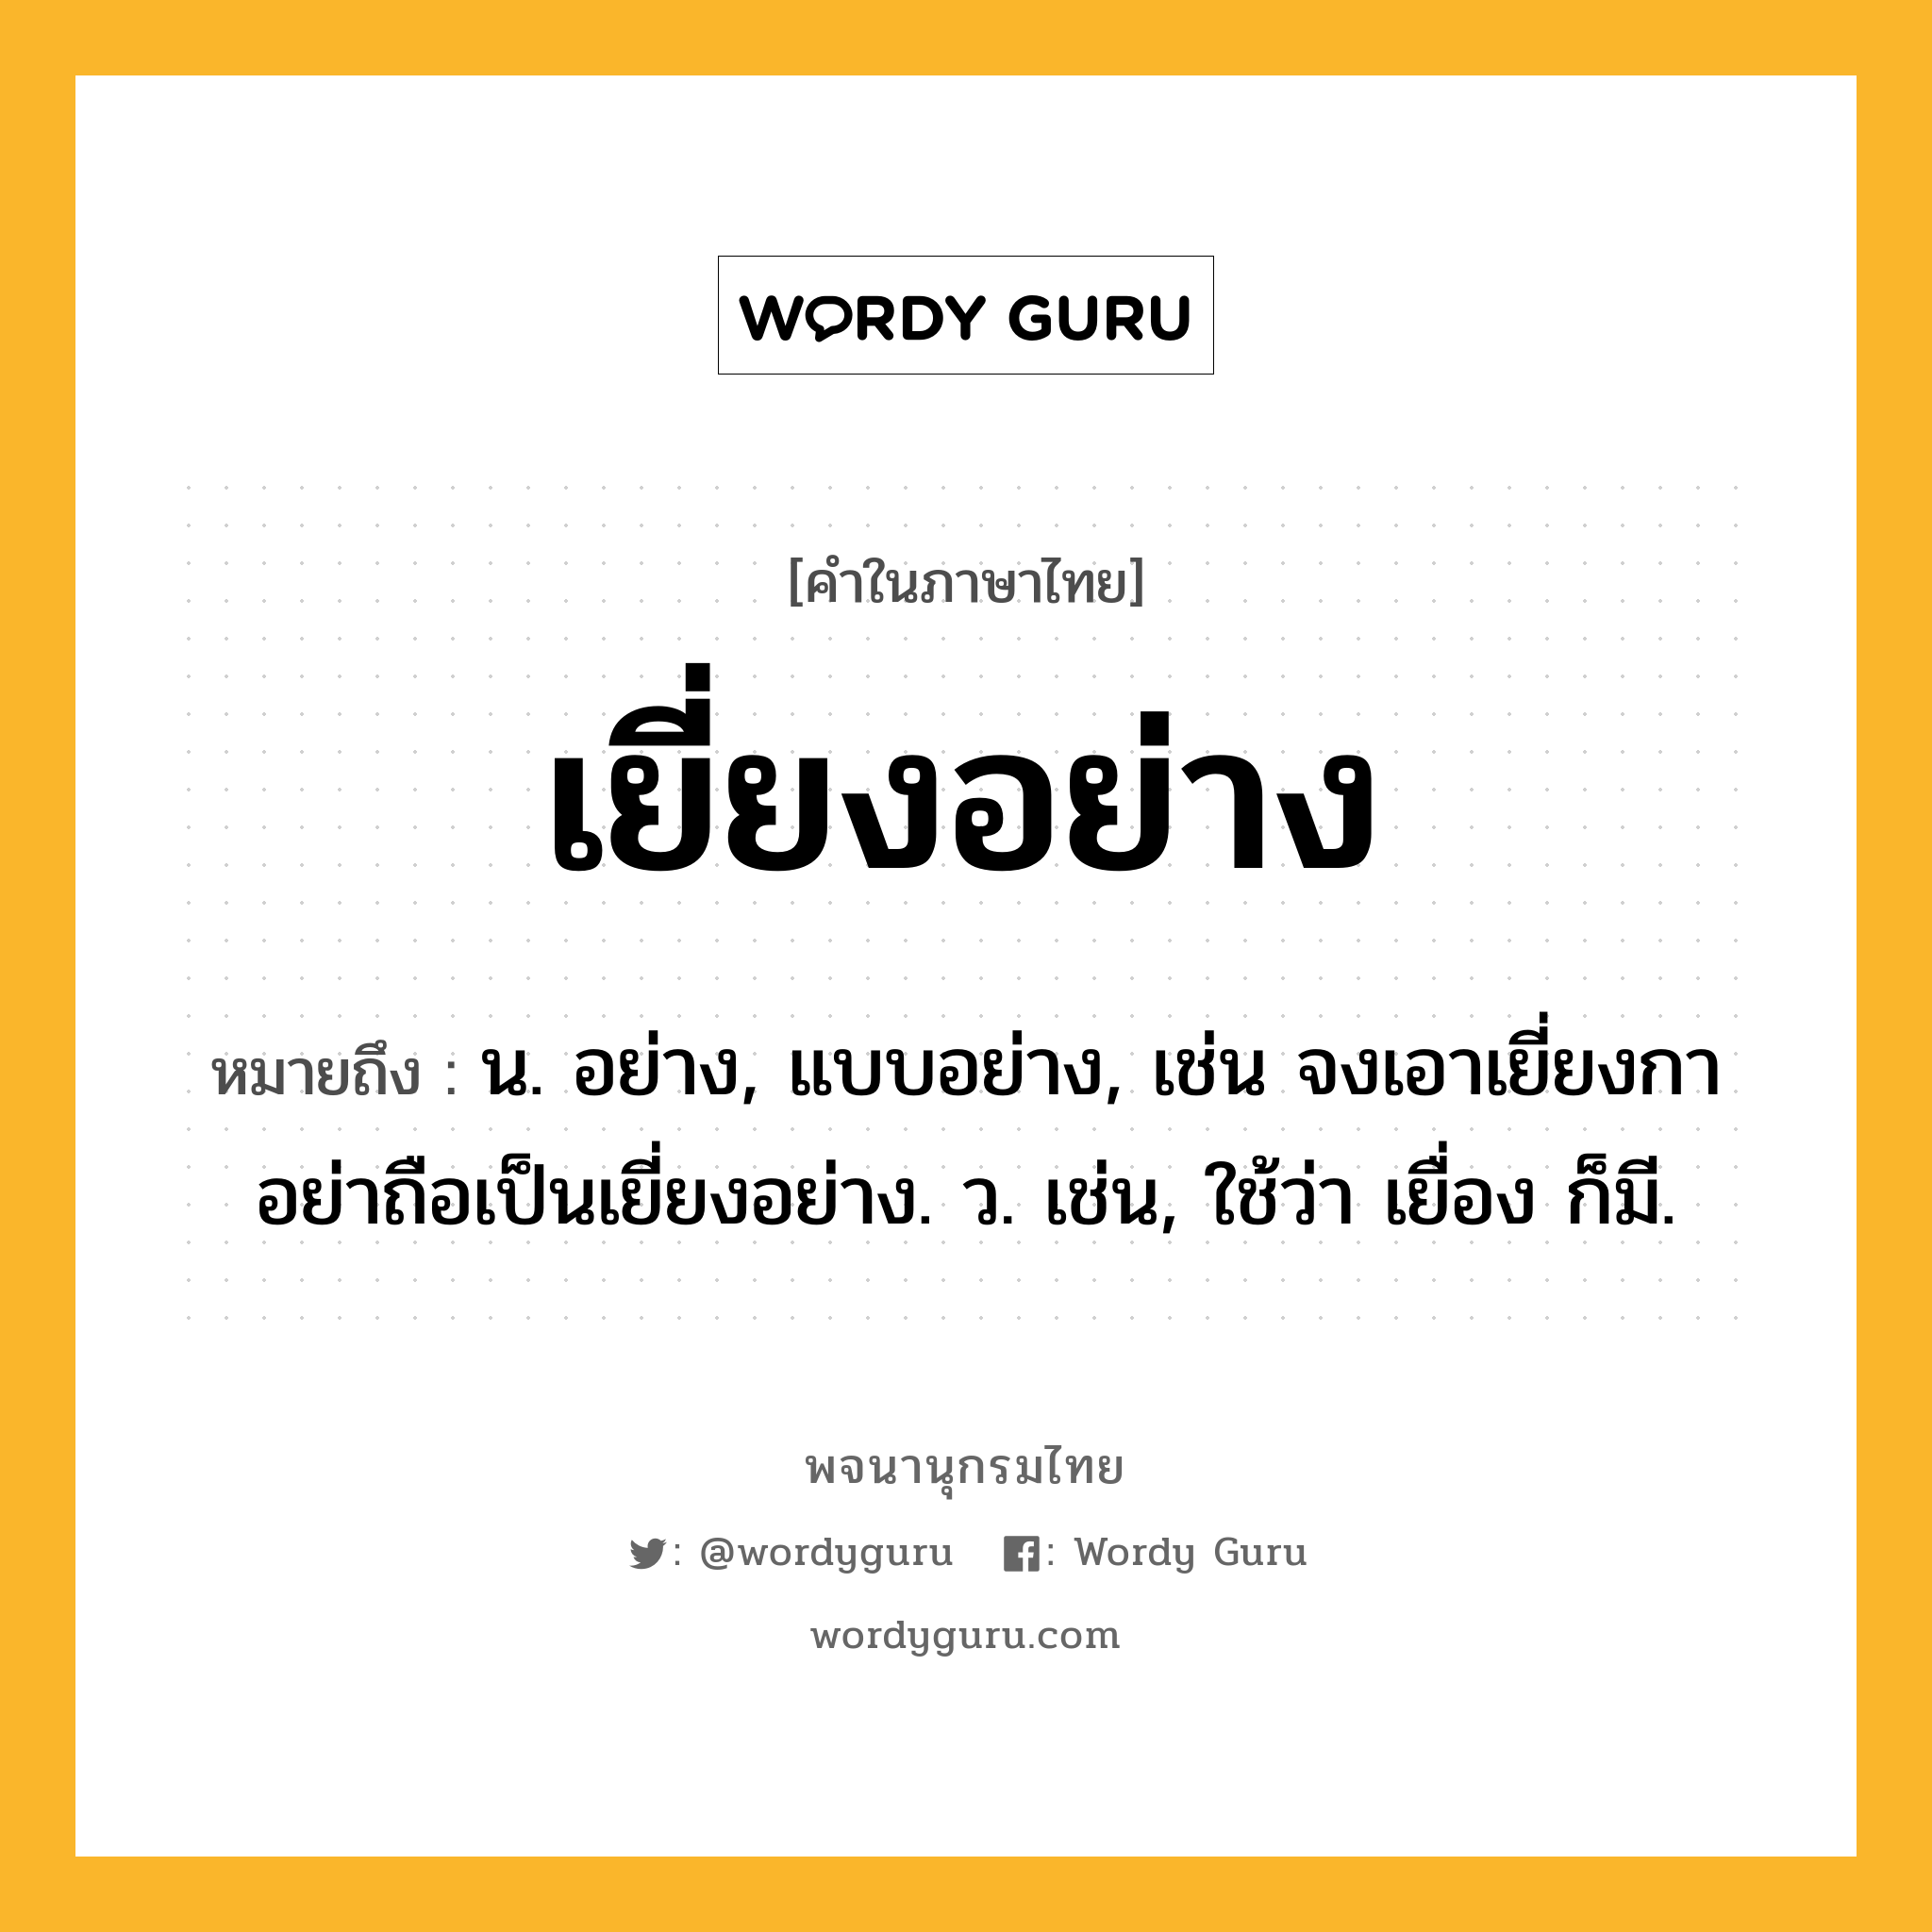 เยี่ยงอย่าง หมายถึงอะไร?, คำในภาษาไทย เยี่ยงอย่าง หมายถึง น. อย่าง, แบบอย่าง, เช่น จงเอาเยี่ยงกา อย่าถือเป็นเยี่ยงอย่าง. ว. เช่น, ใช้ว่า เยื่อง ก็มี.